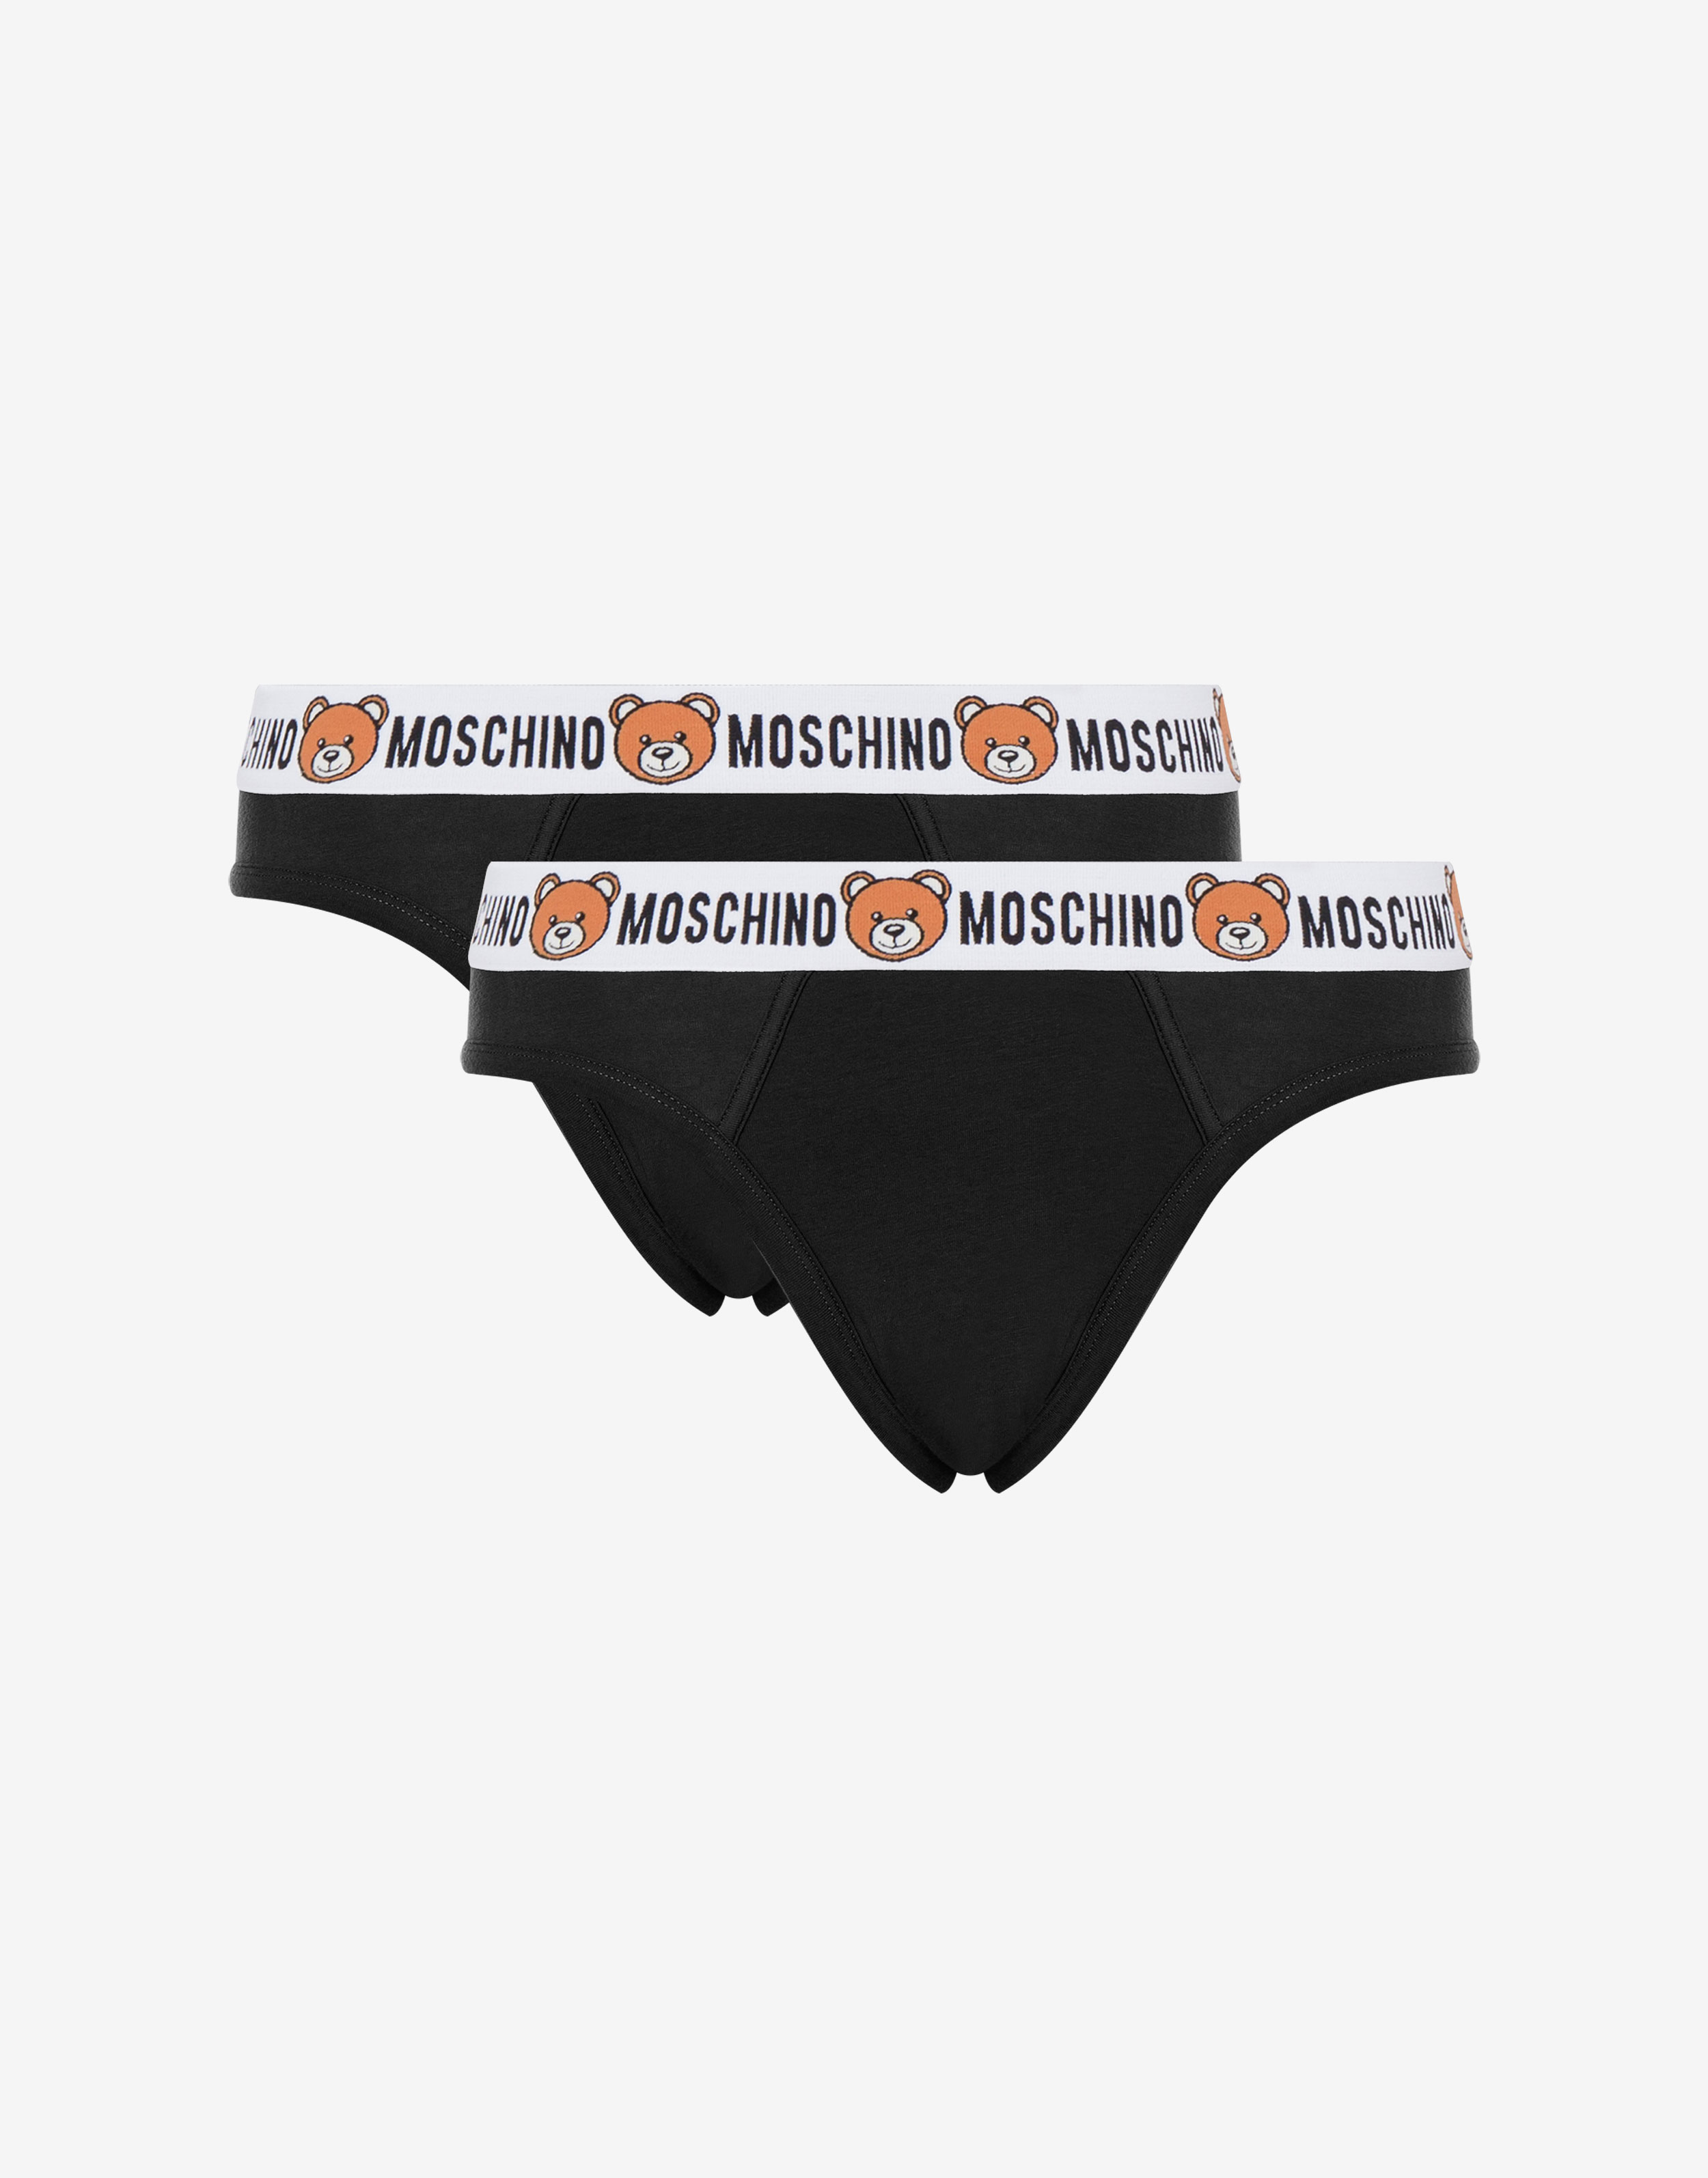 Moschino Underwear 